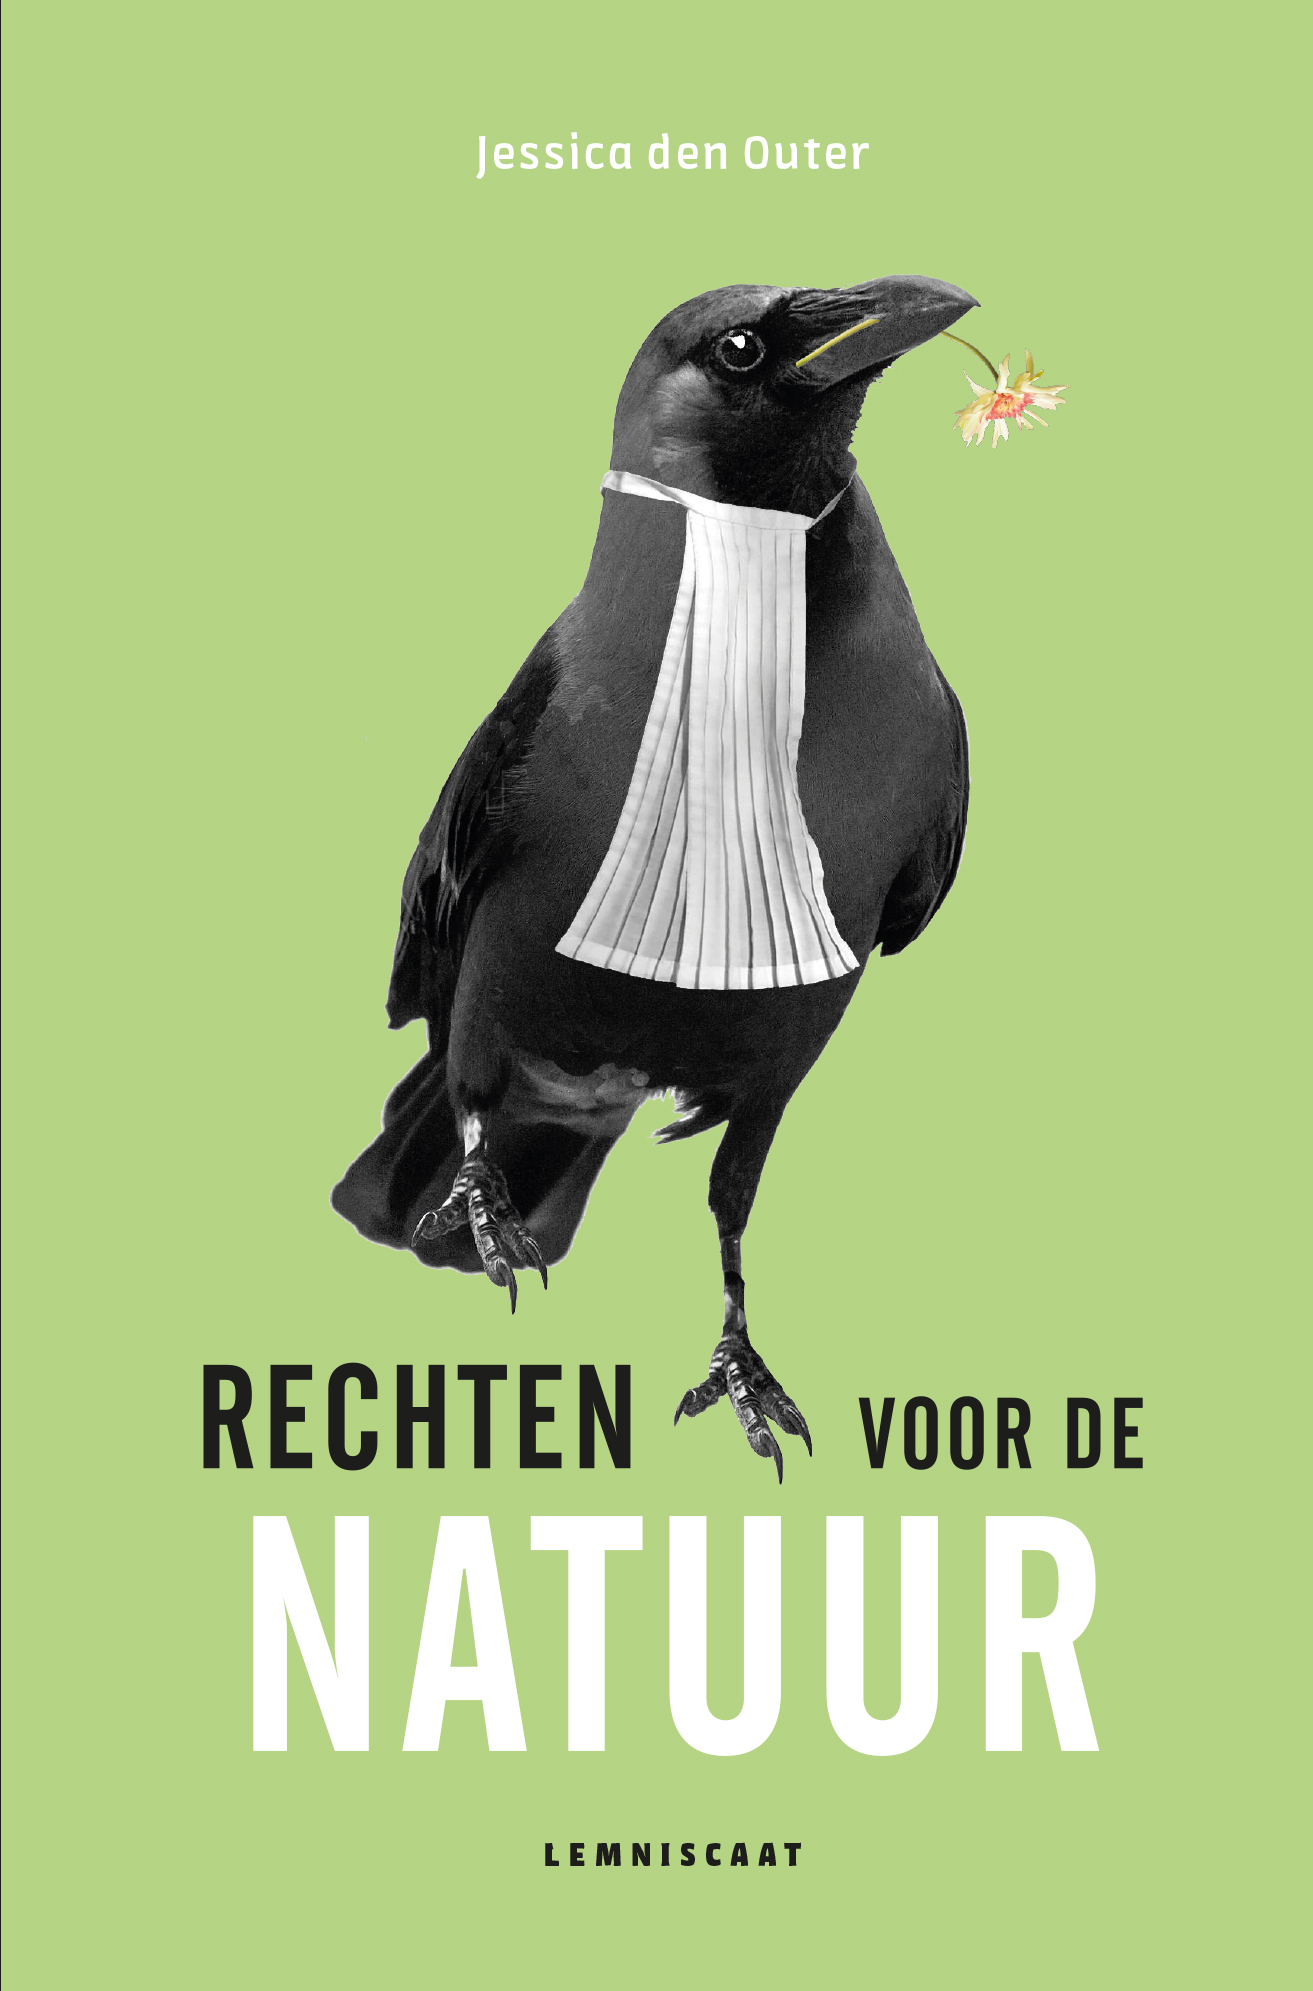 Book of the Month: 'Rechten voor de Natuur'